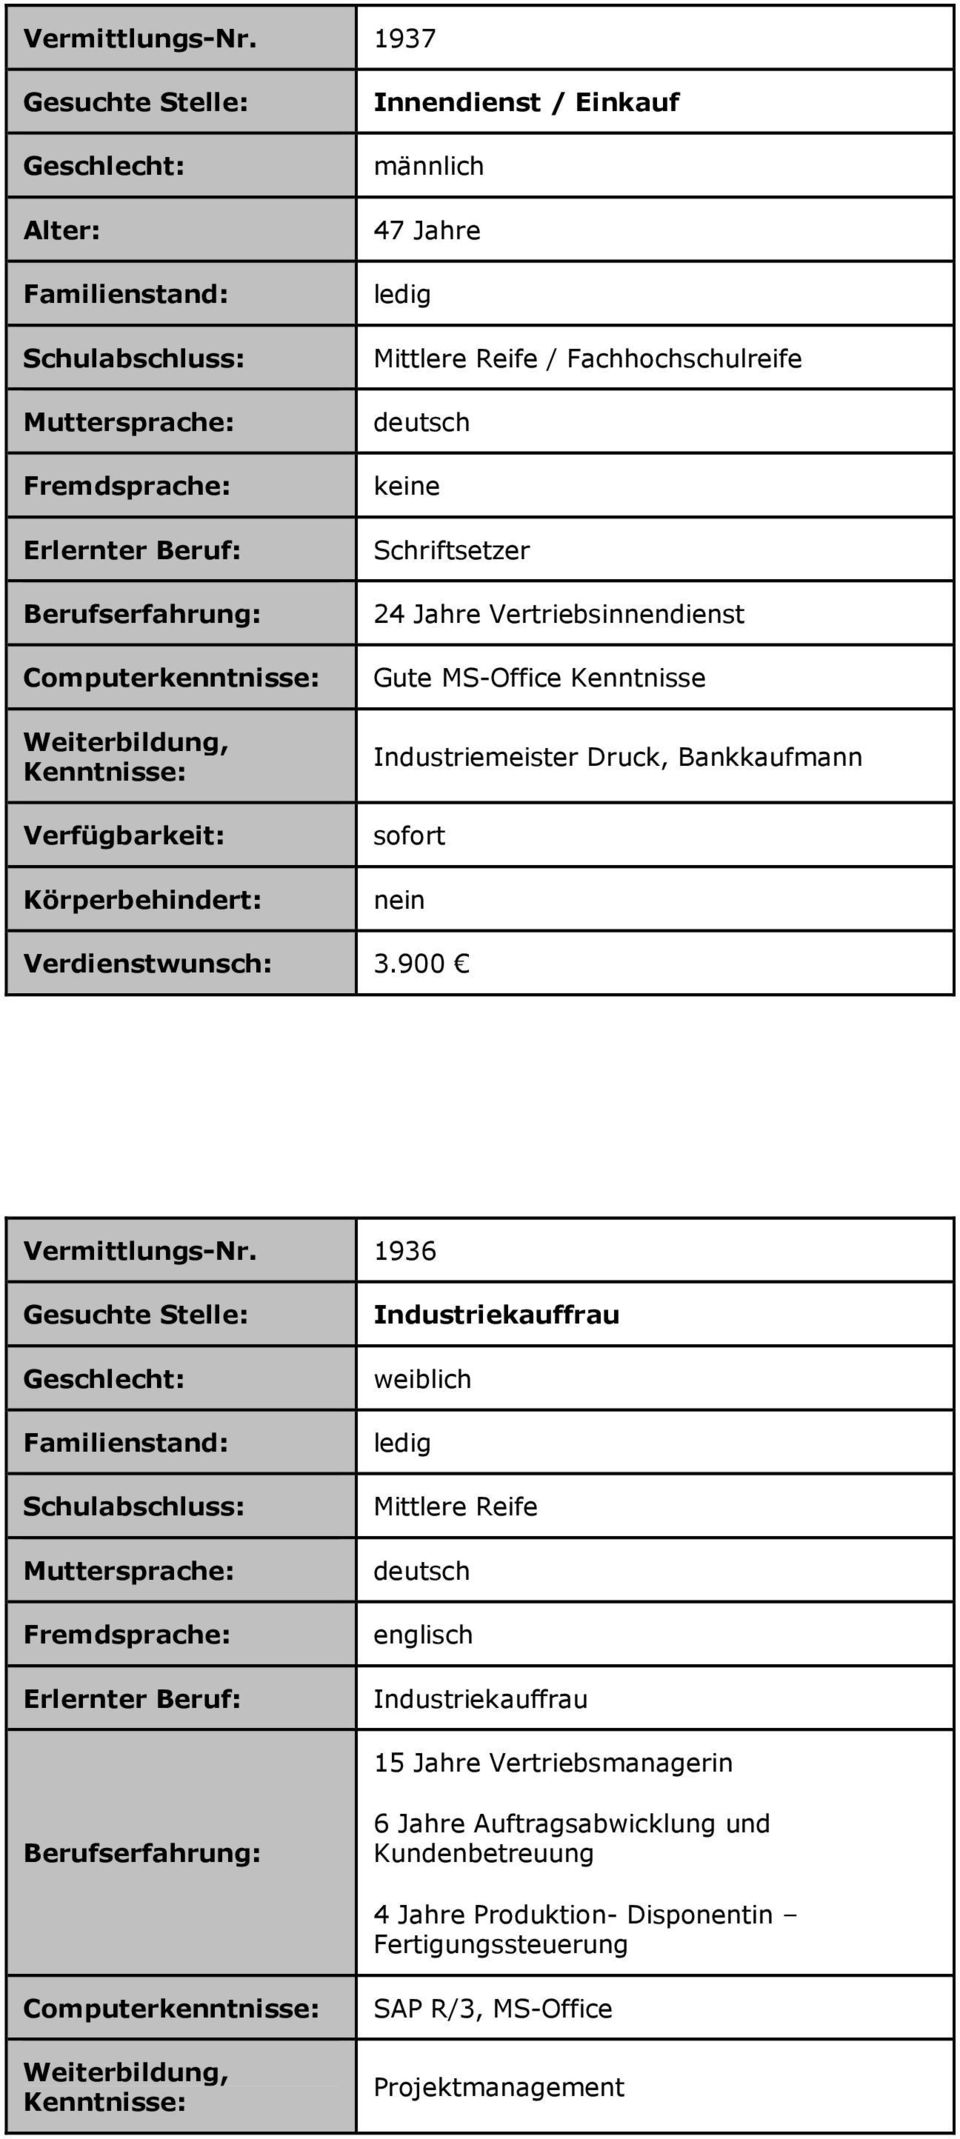 Vertriebsinnendienst Gute MS-Office Kenntnisse Industriemeister Druck, Bankkaufmann 3.